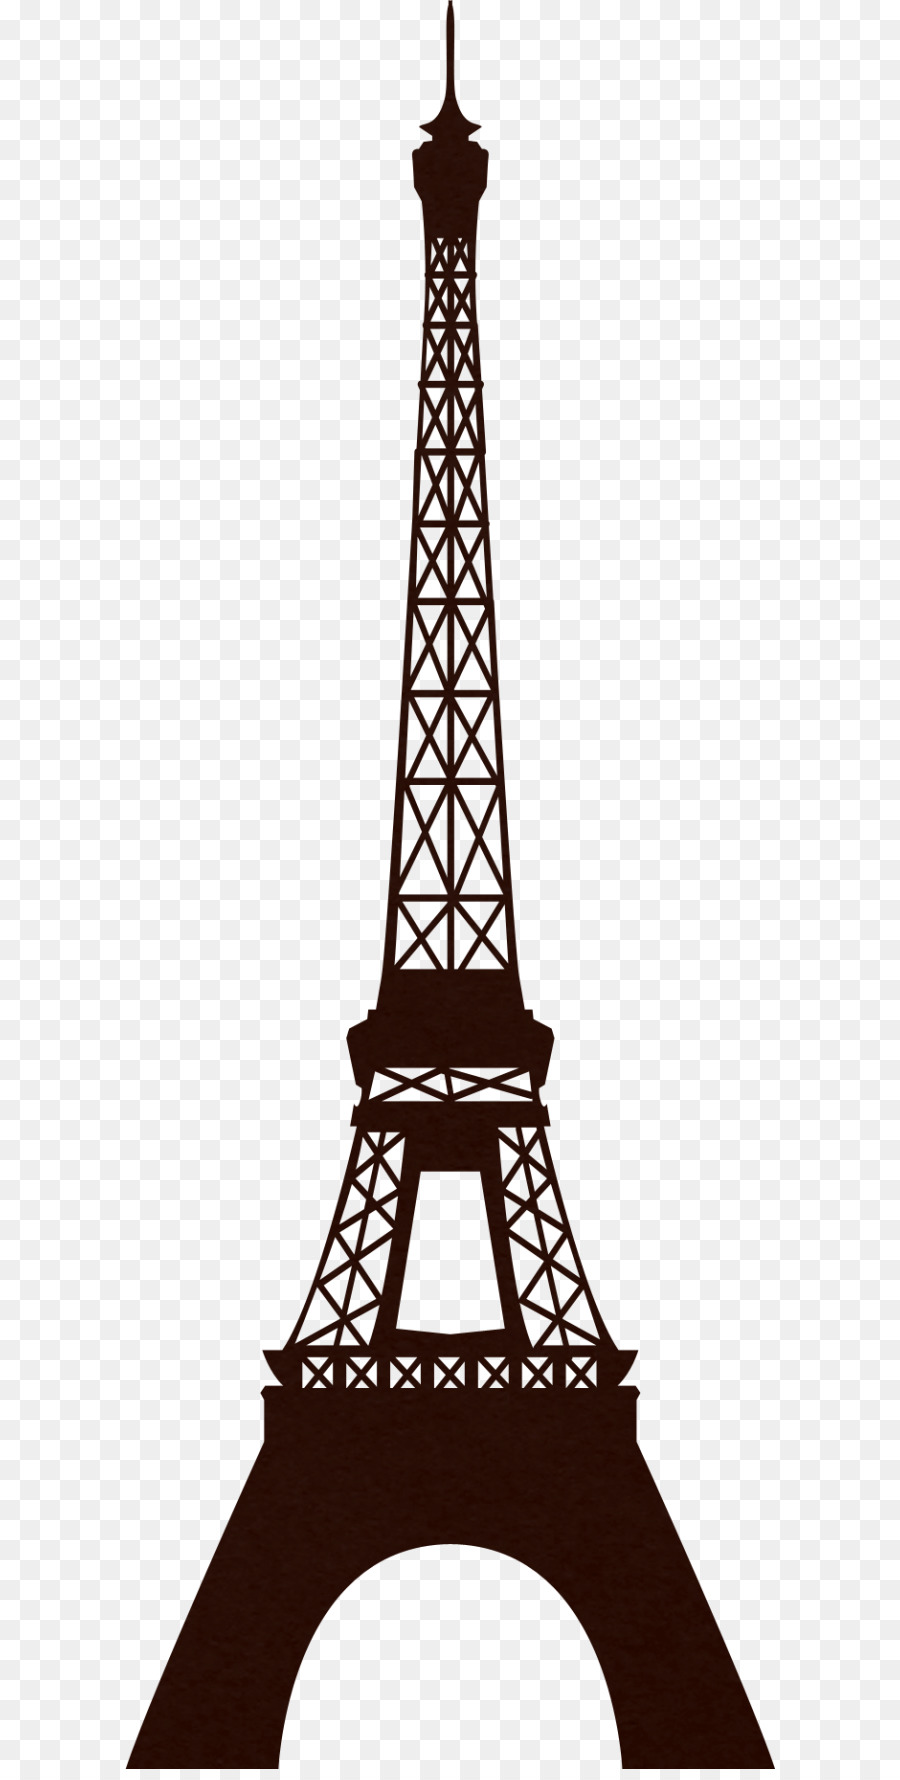 Eiffel Tower Clip art - Paris png download - 916*1600 - Free ...